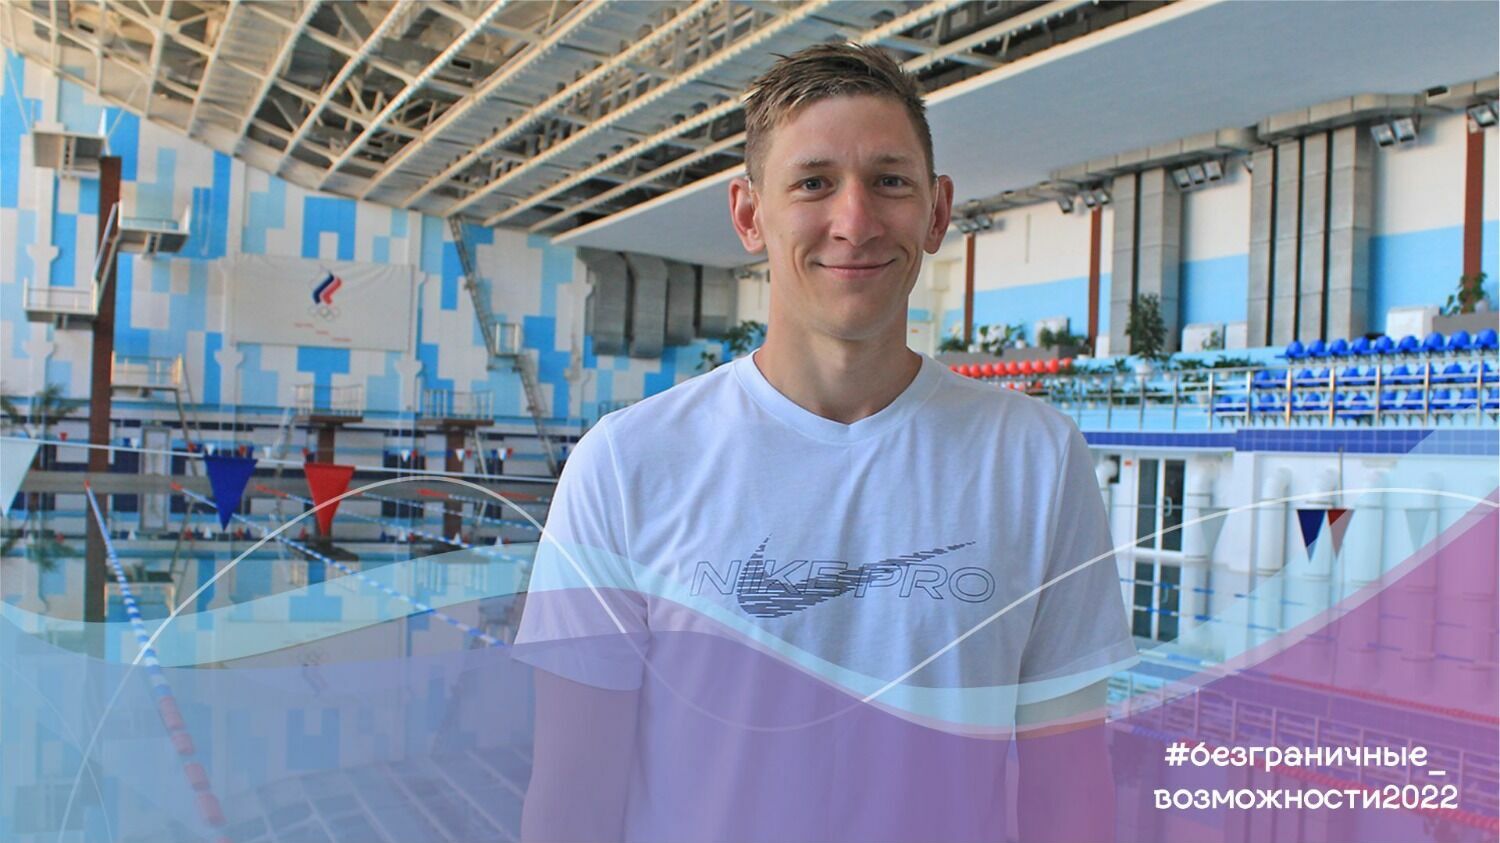 Чемпион по плаванию среди глухих из Приморья ставит рекорды, которые нереально побить